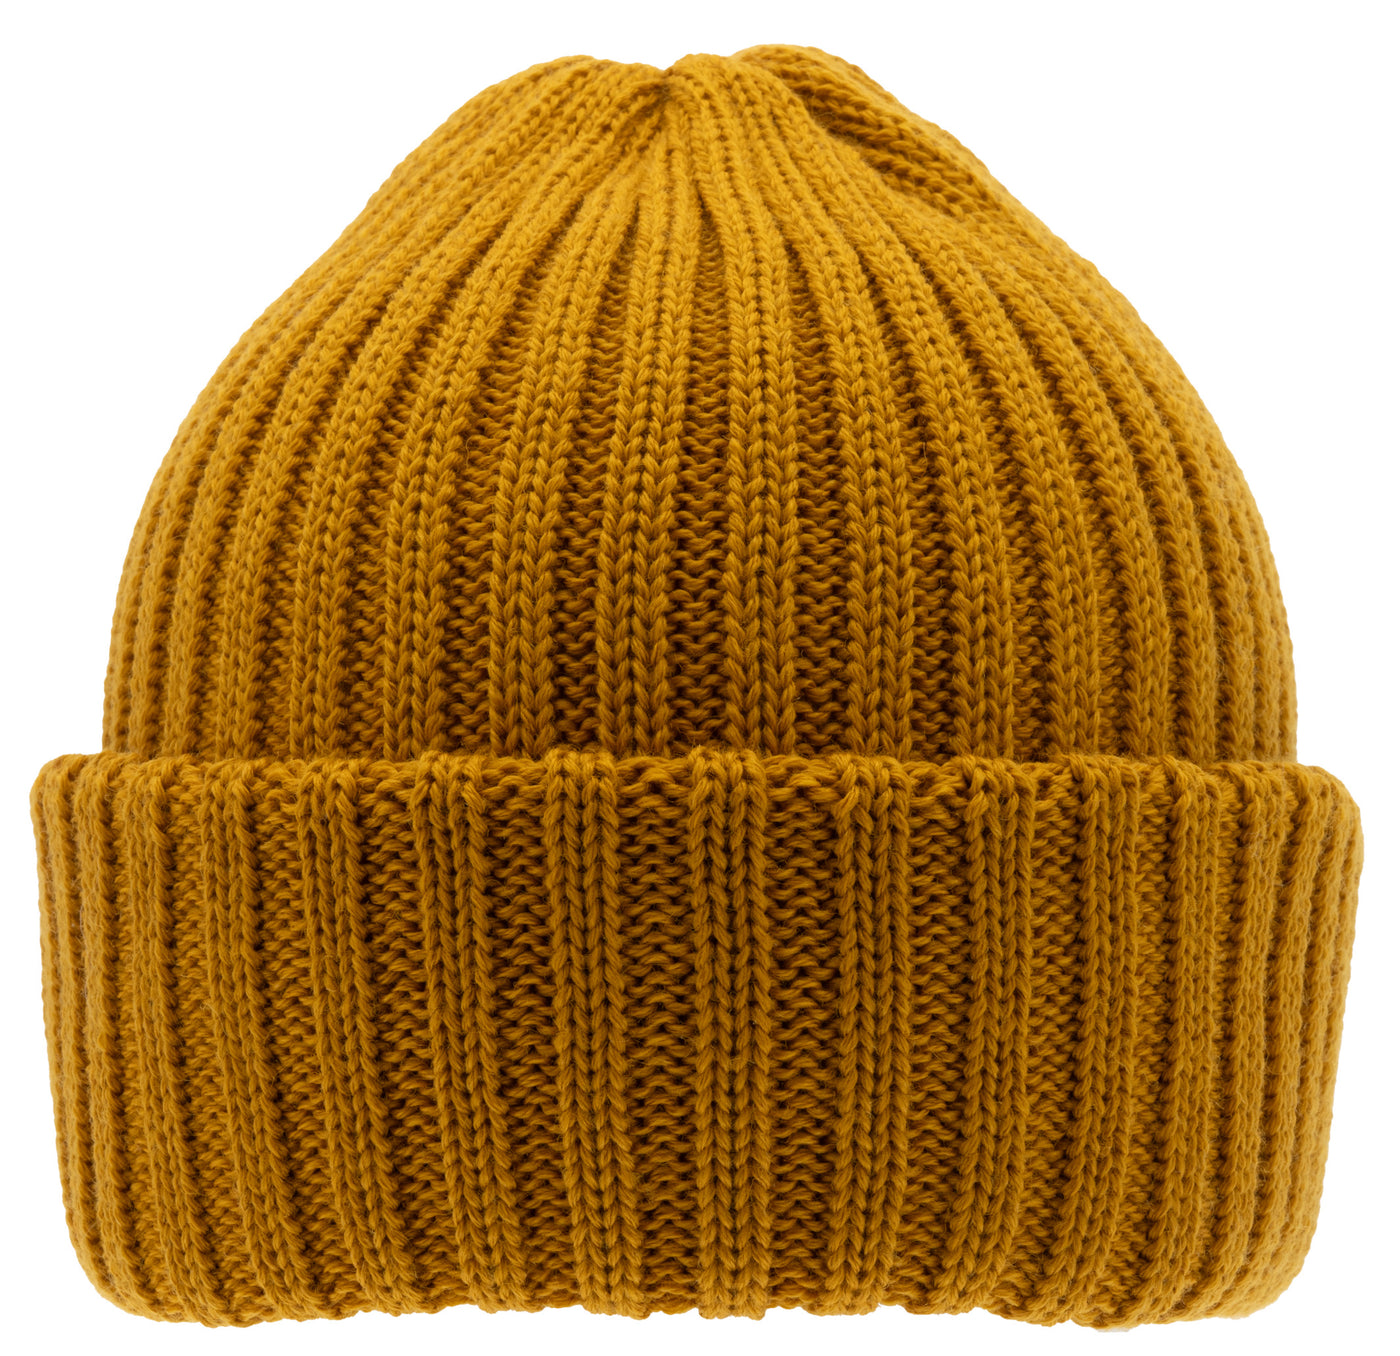 Nelson Wool Knit - Mustard